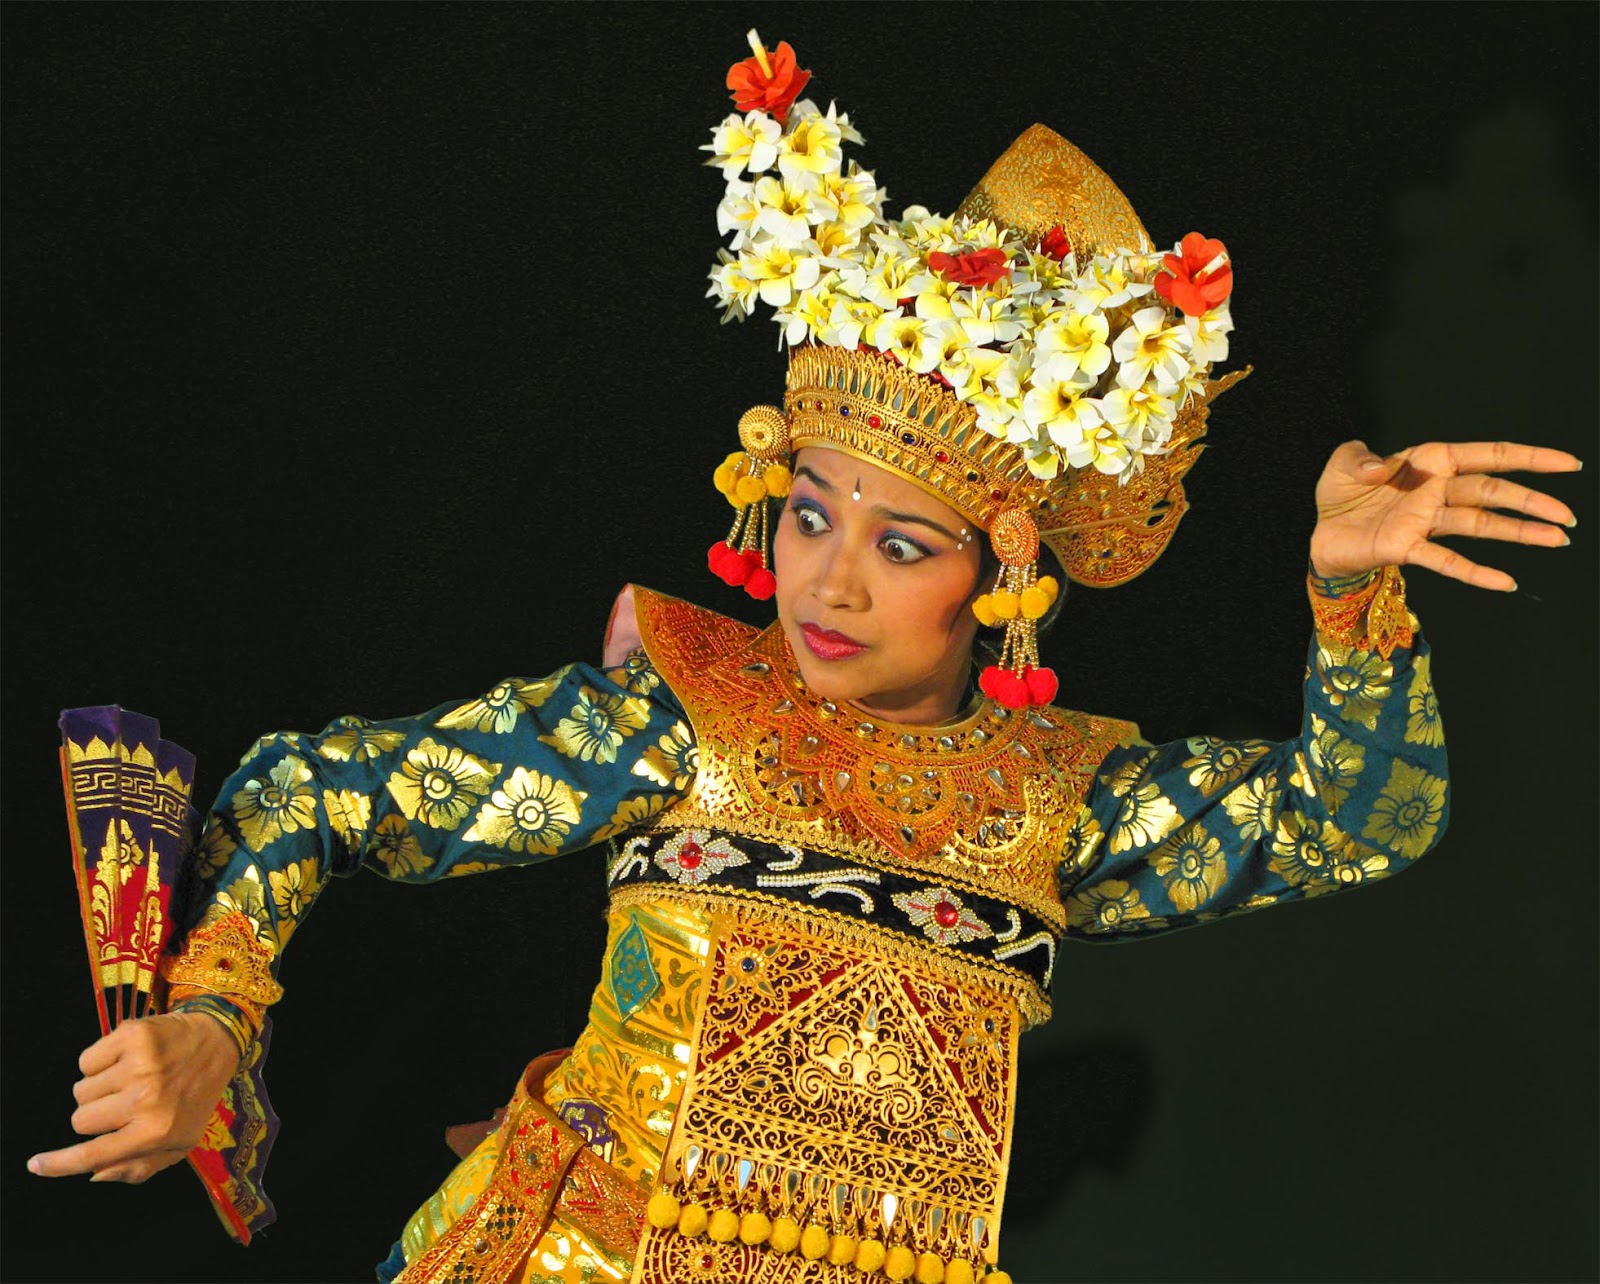 Mengungkap Keunikan Seni Tari Tradisional dari Berbagai Daerah di Indonesia